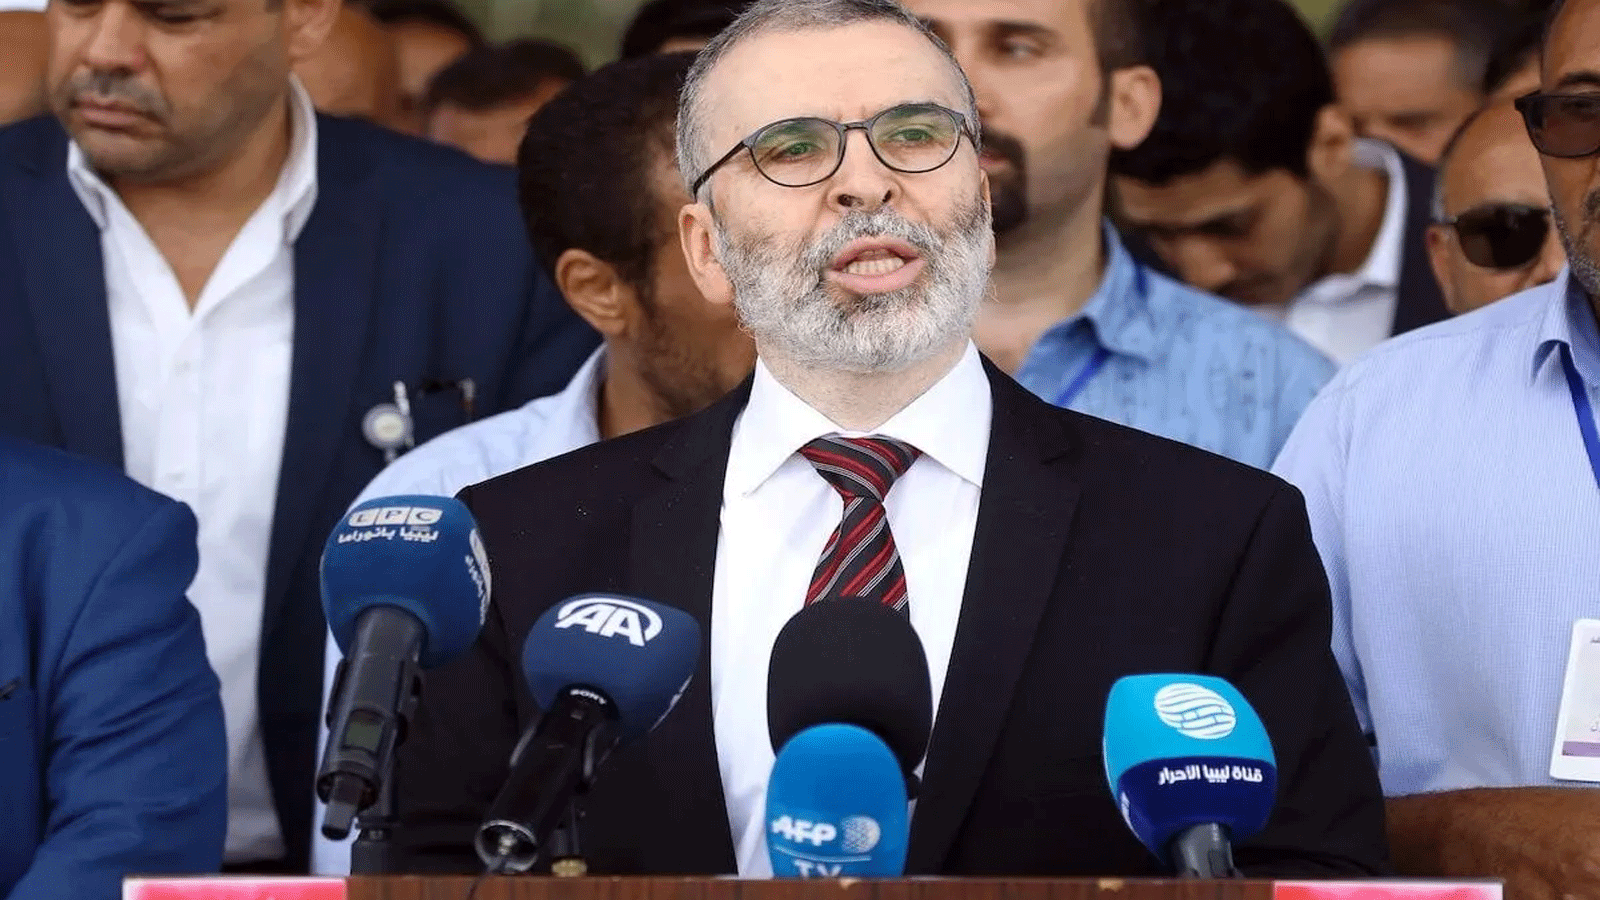 مصطفى صنع الله، الذي يرفض إقالته من رئاسة مجلس إدارة المؤسسة الوطنية للنفط في ليبيا